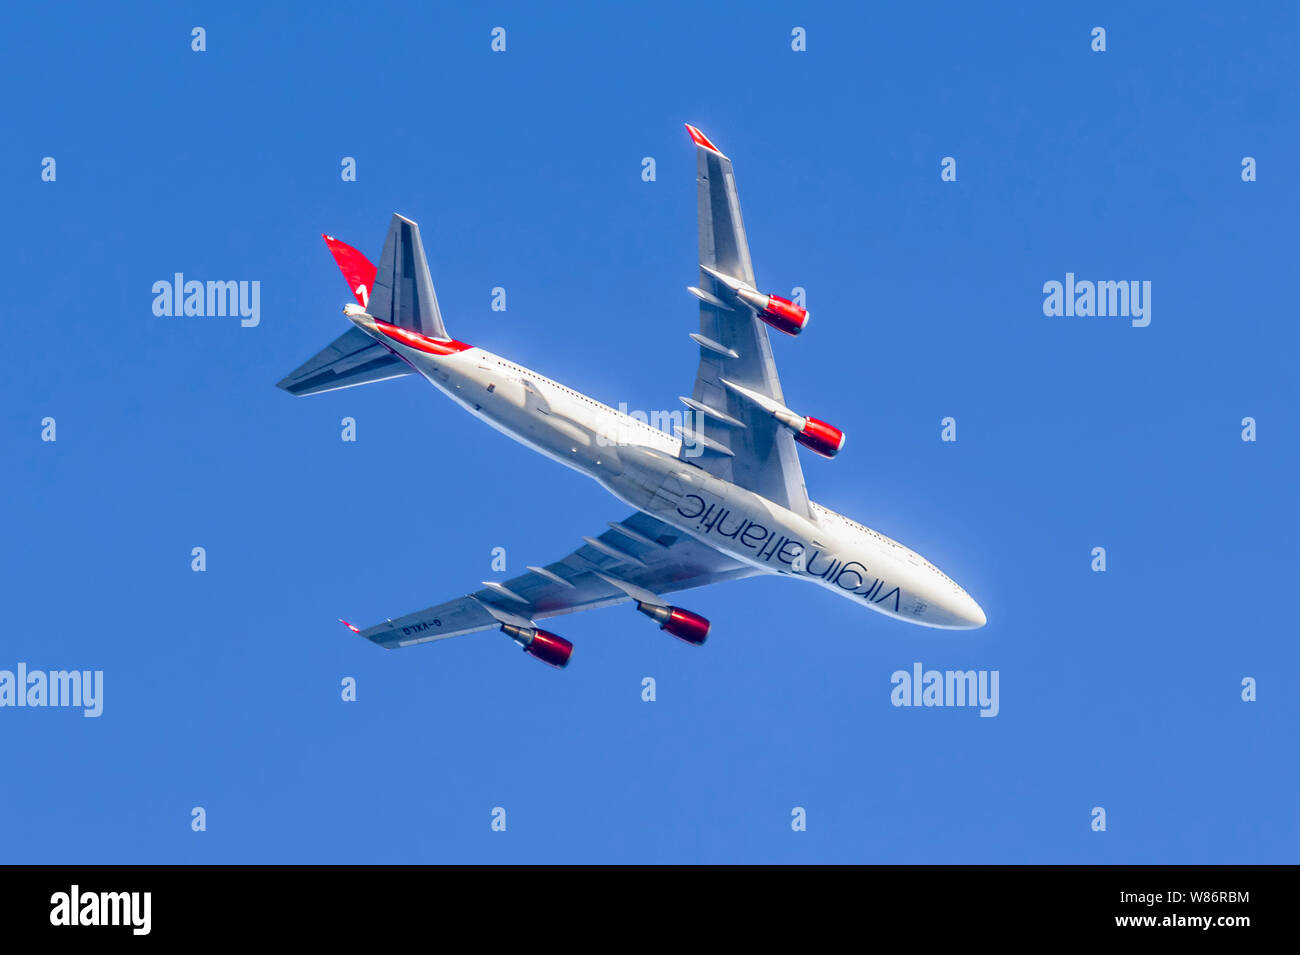 Jusqu'à la à la face inférieure d'un avion Virgin Atlantic, G-VXLG, un Boeing 747-41R aéronefs, de haut vol against blue sky au Royaume-Uni. Banque D'Images